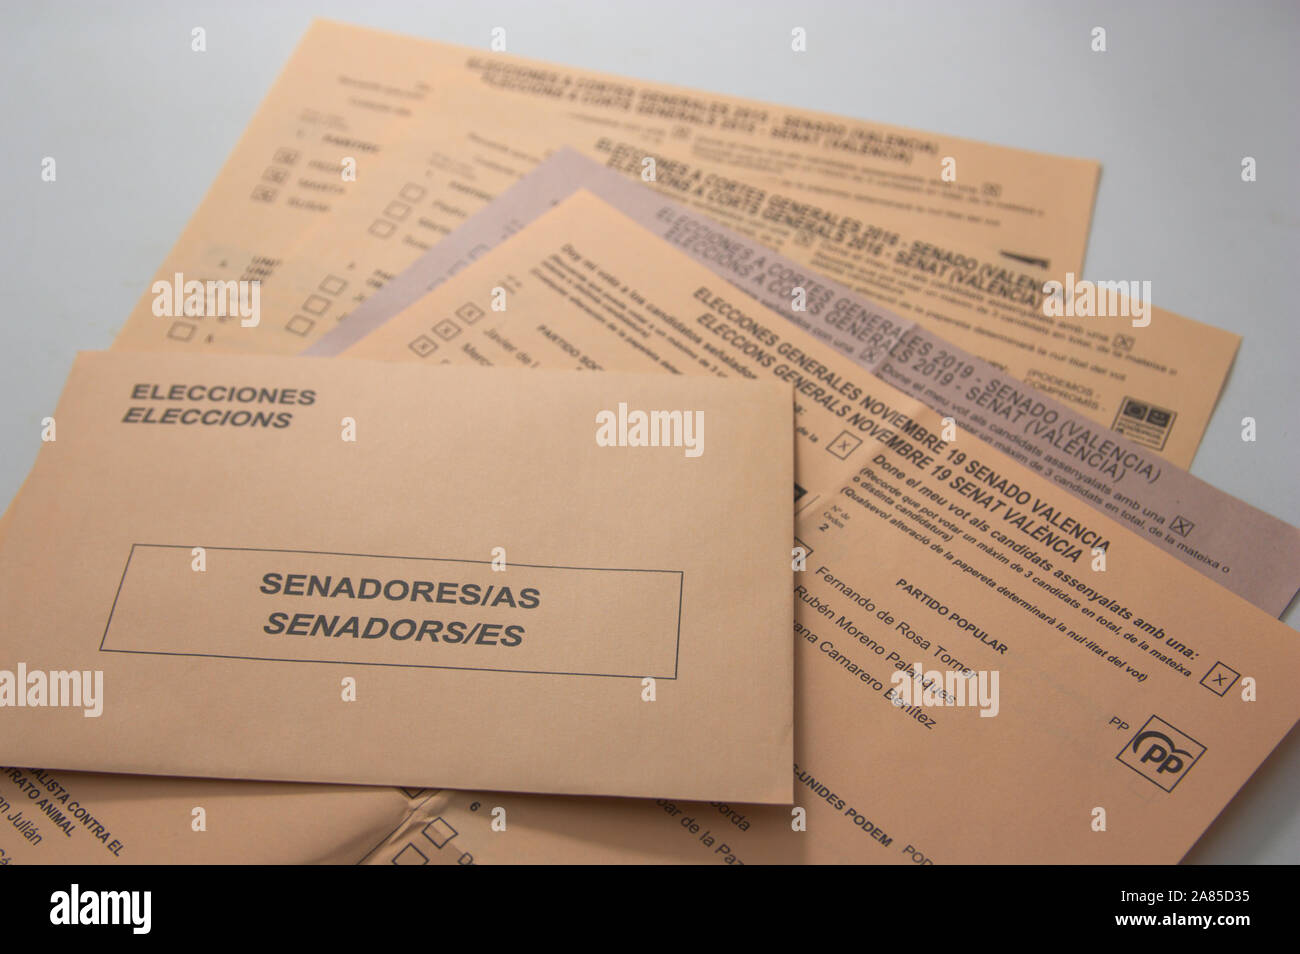 Novembre 2019. Valencia, Spagna. Diverse schede elettorali per le elezioni del senato di Spagna durante gli anni 2015, 2016 e 2019, insieme con il Foto Stock